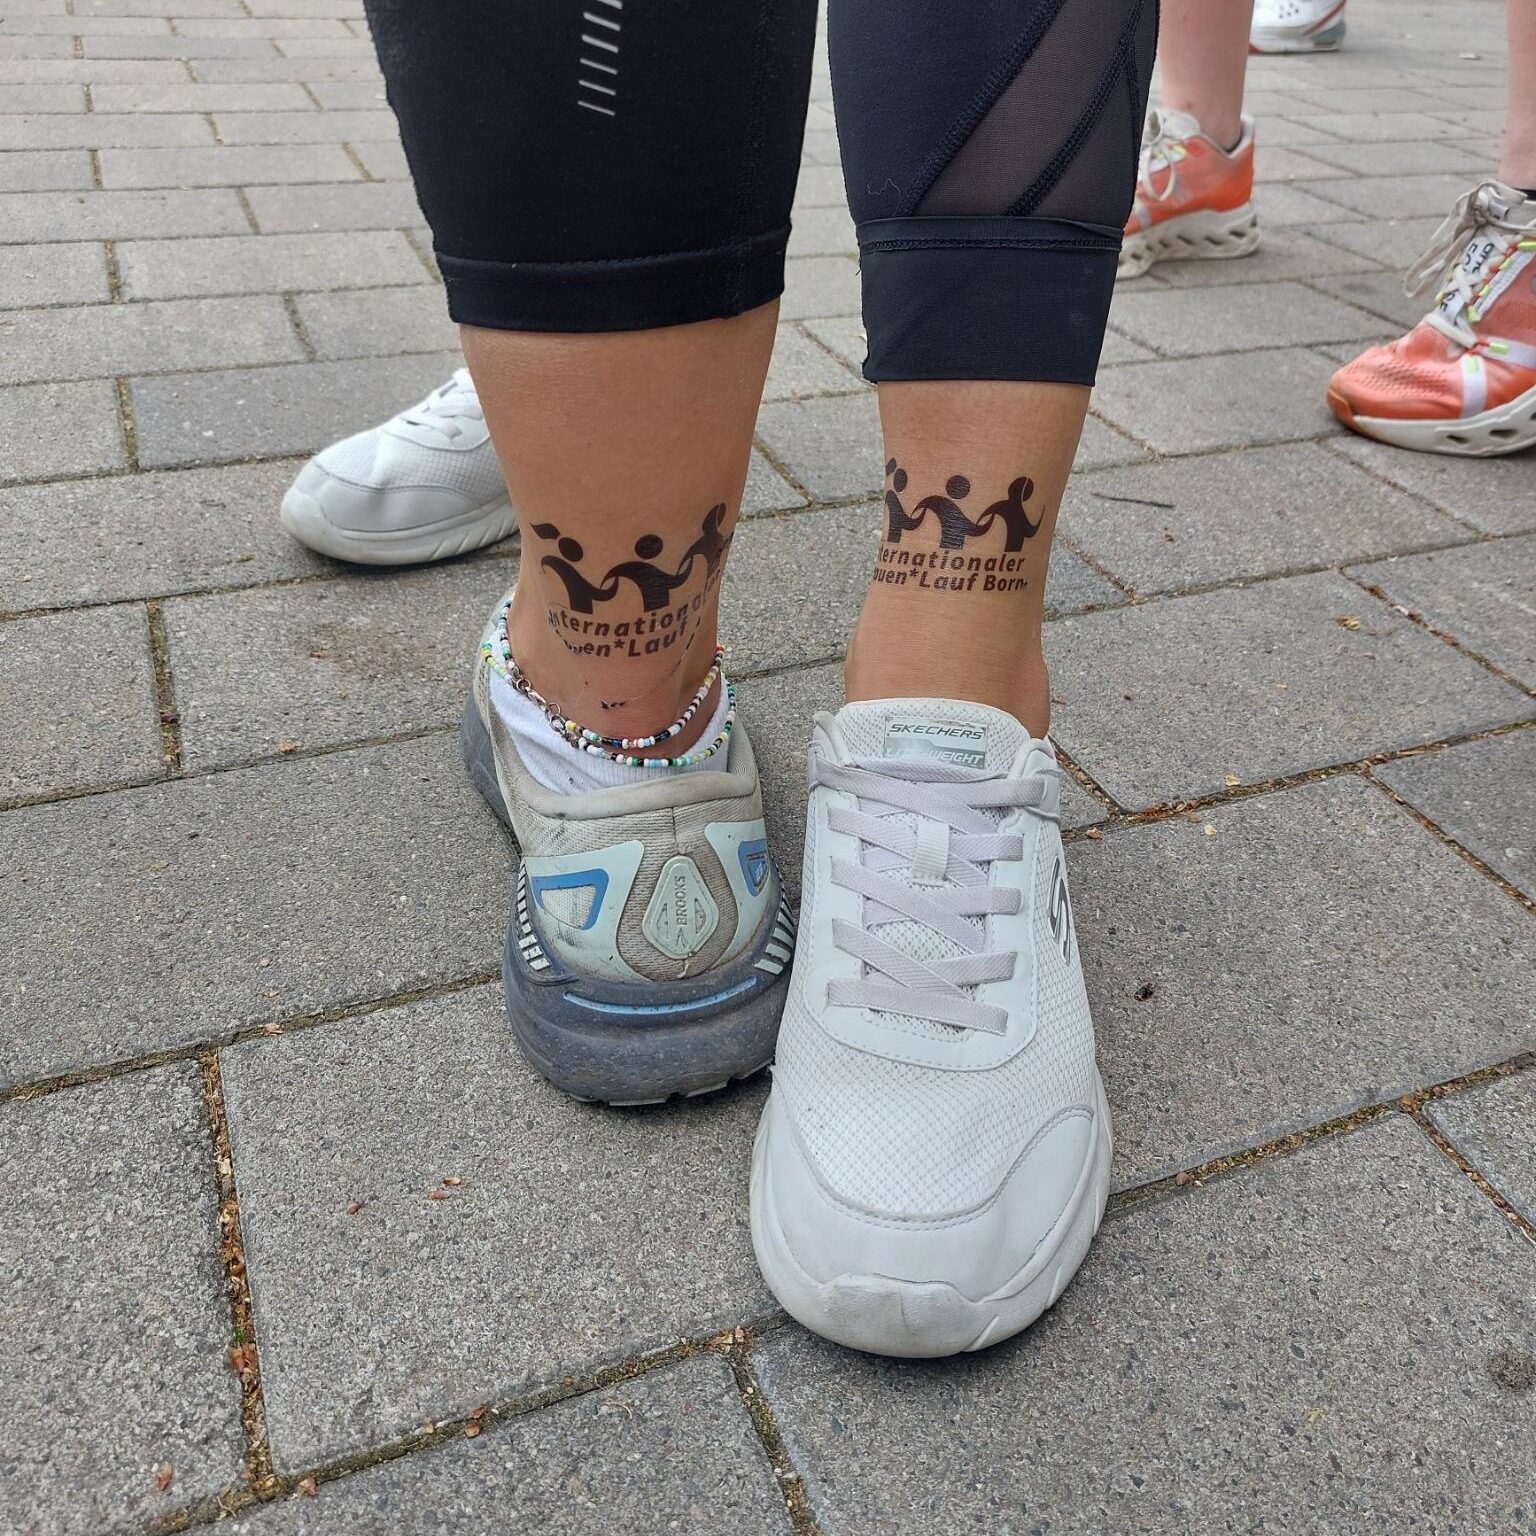 Zwei verschiedene Beine präsentieren das schwarzene Tattoo des Internationalen Frauenlauf Borna. Einmal ist es hinten oberhalb der Ferse und einmal vor oberhalb des Fußes angebracht.